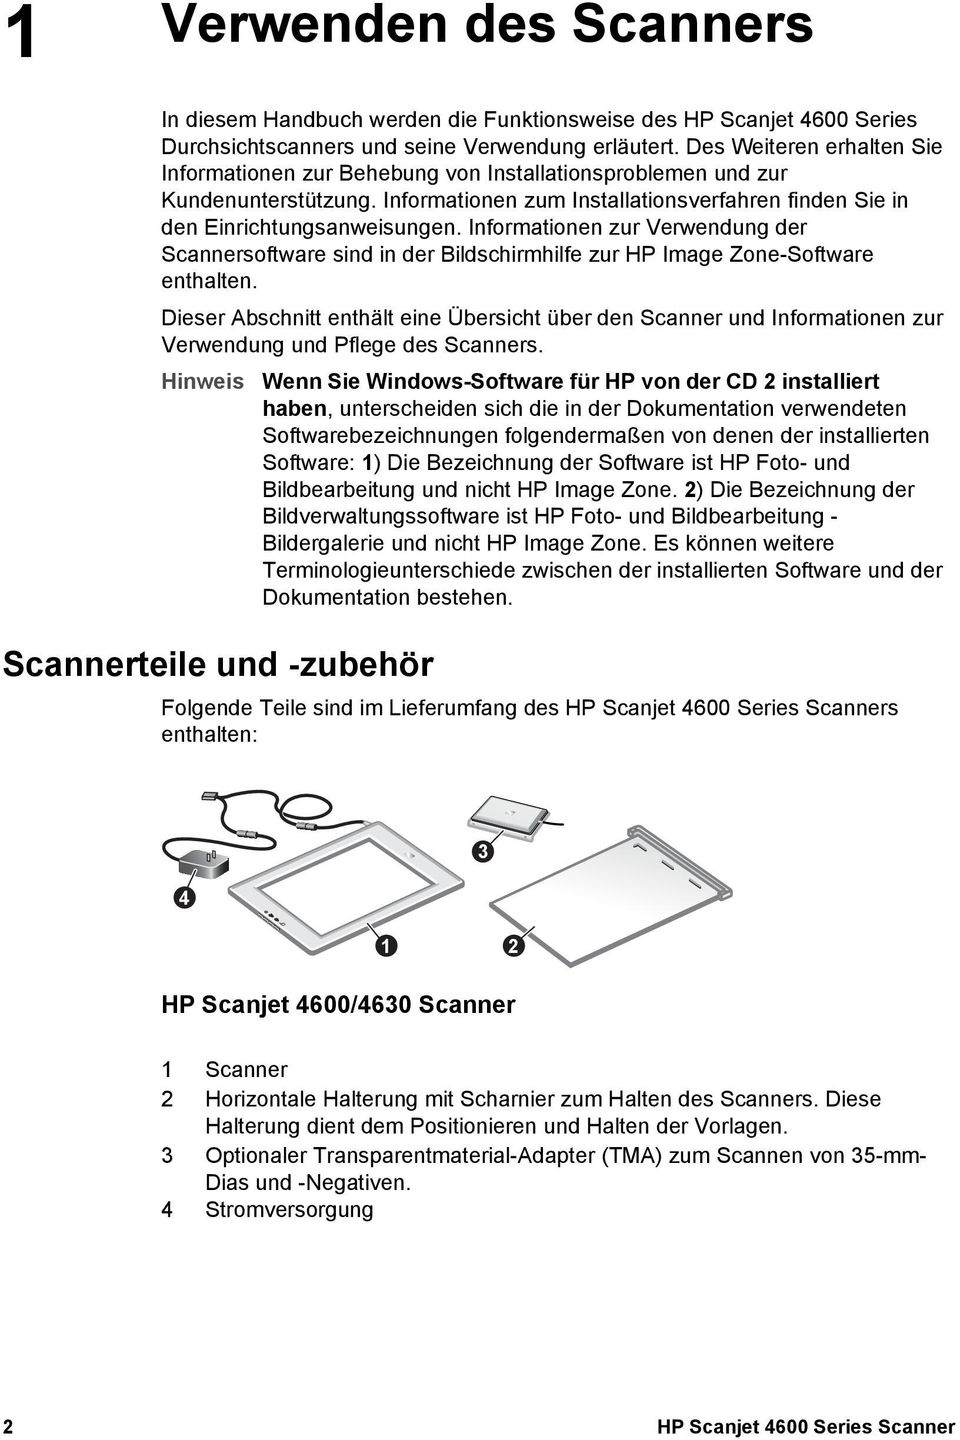 Informationen zur Verwendung der Scannersoftware sind in der Bildschirmhilfe zur HP Image Zone-Software enthalten.